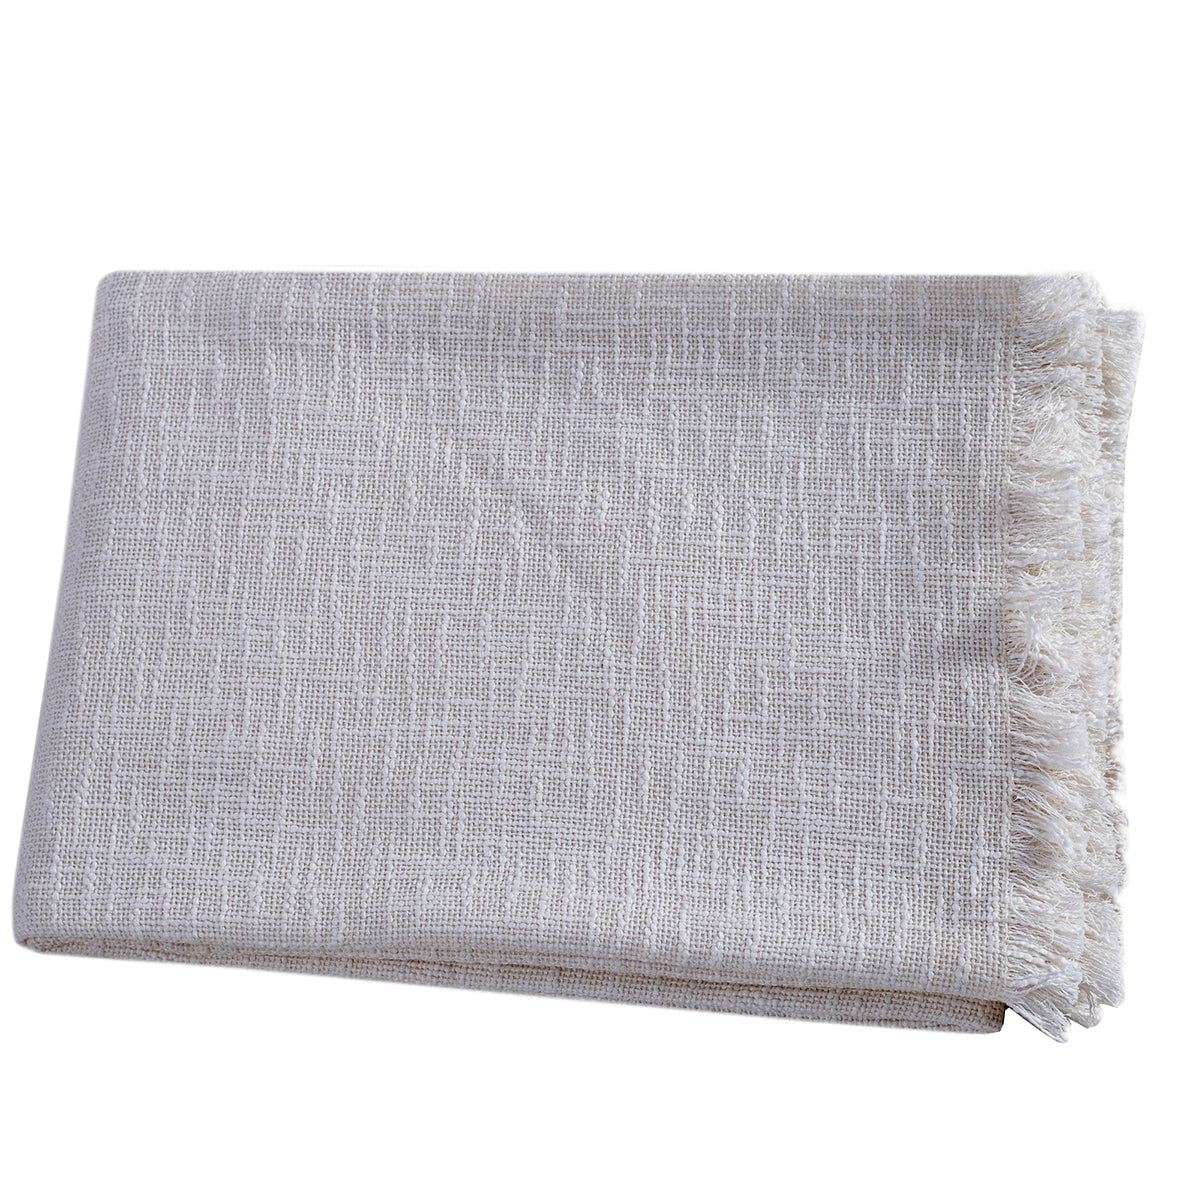 Rurban Divine Marcella Solid 100% Cotton White Throw/Multi Cover